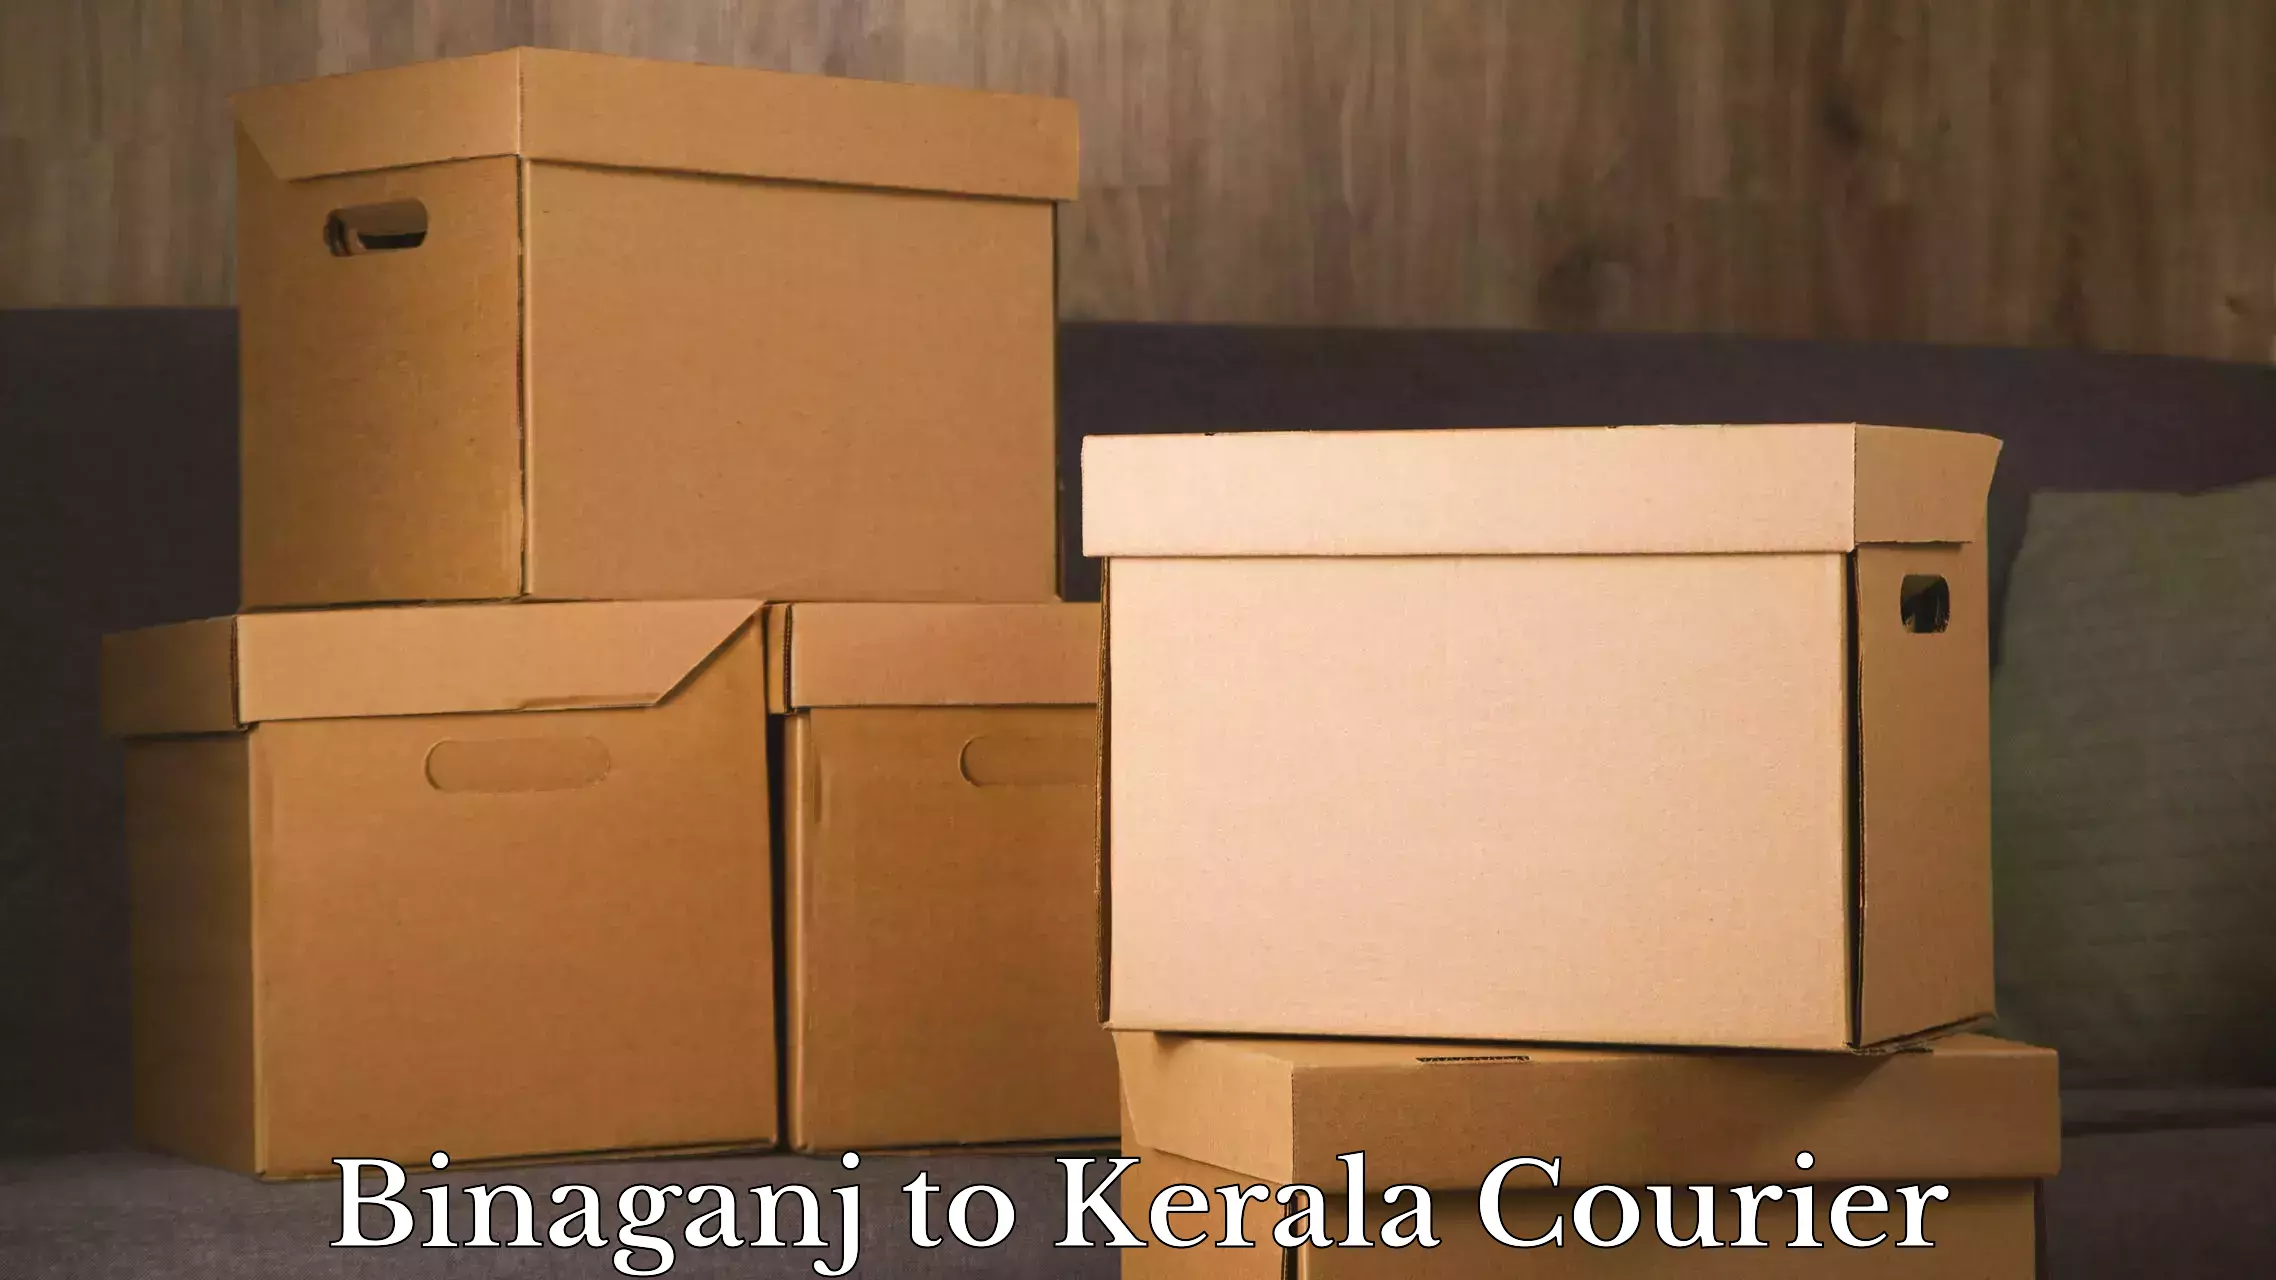 Luggage shipment specialists Binaganj to Munnar